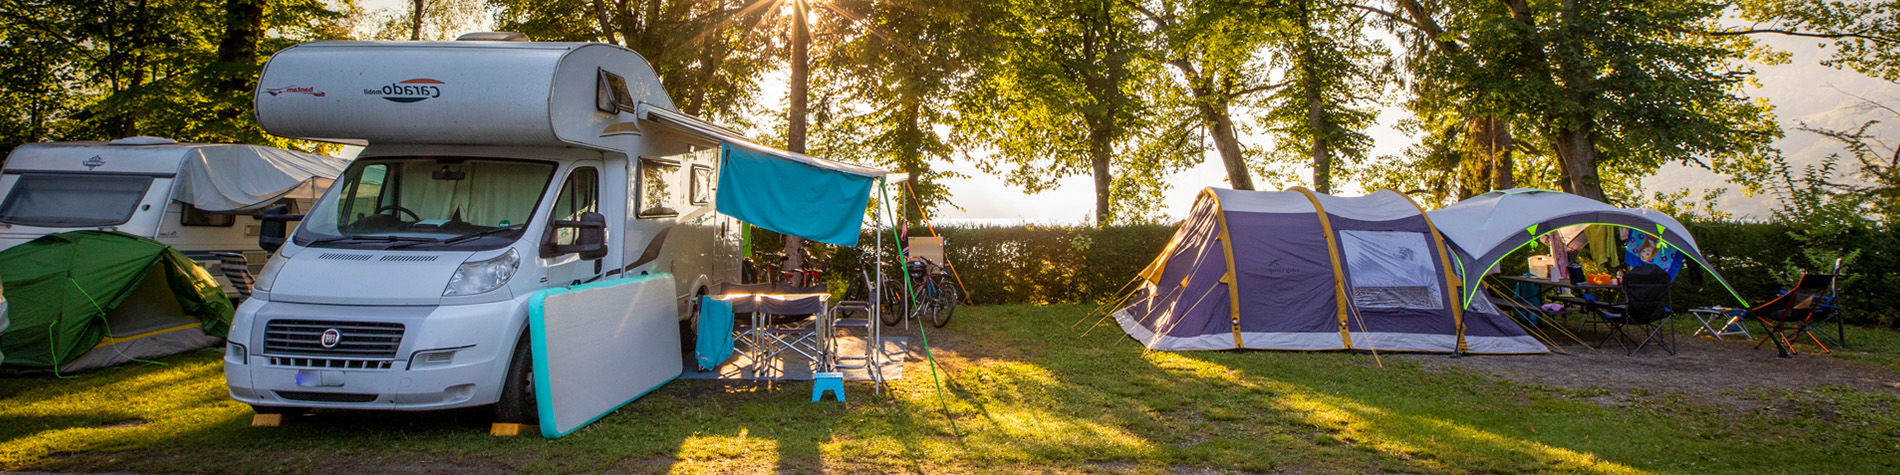 Camping- und Wohnmobilzubehör